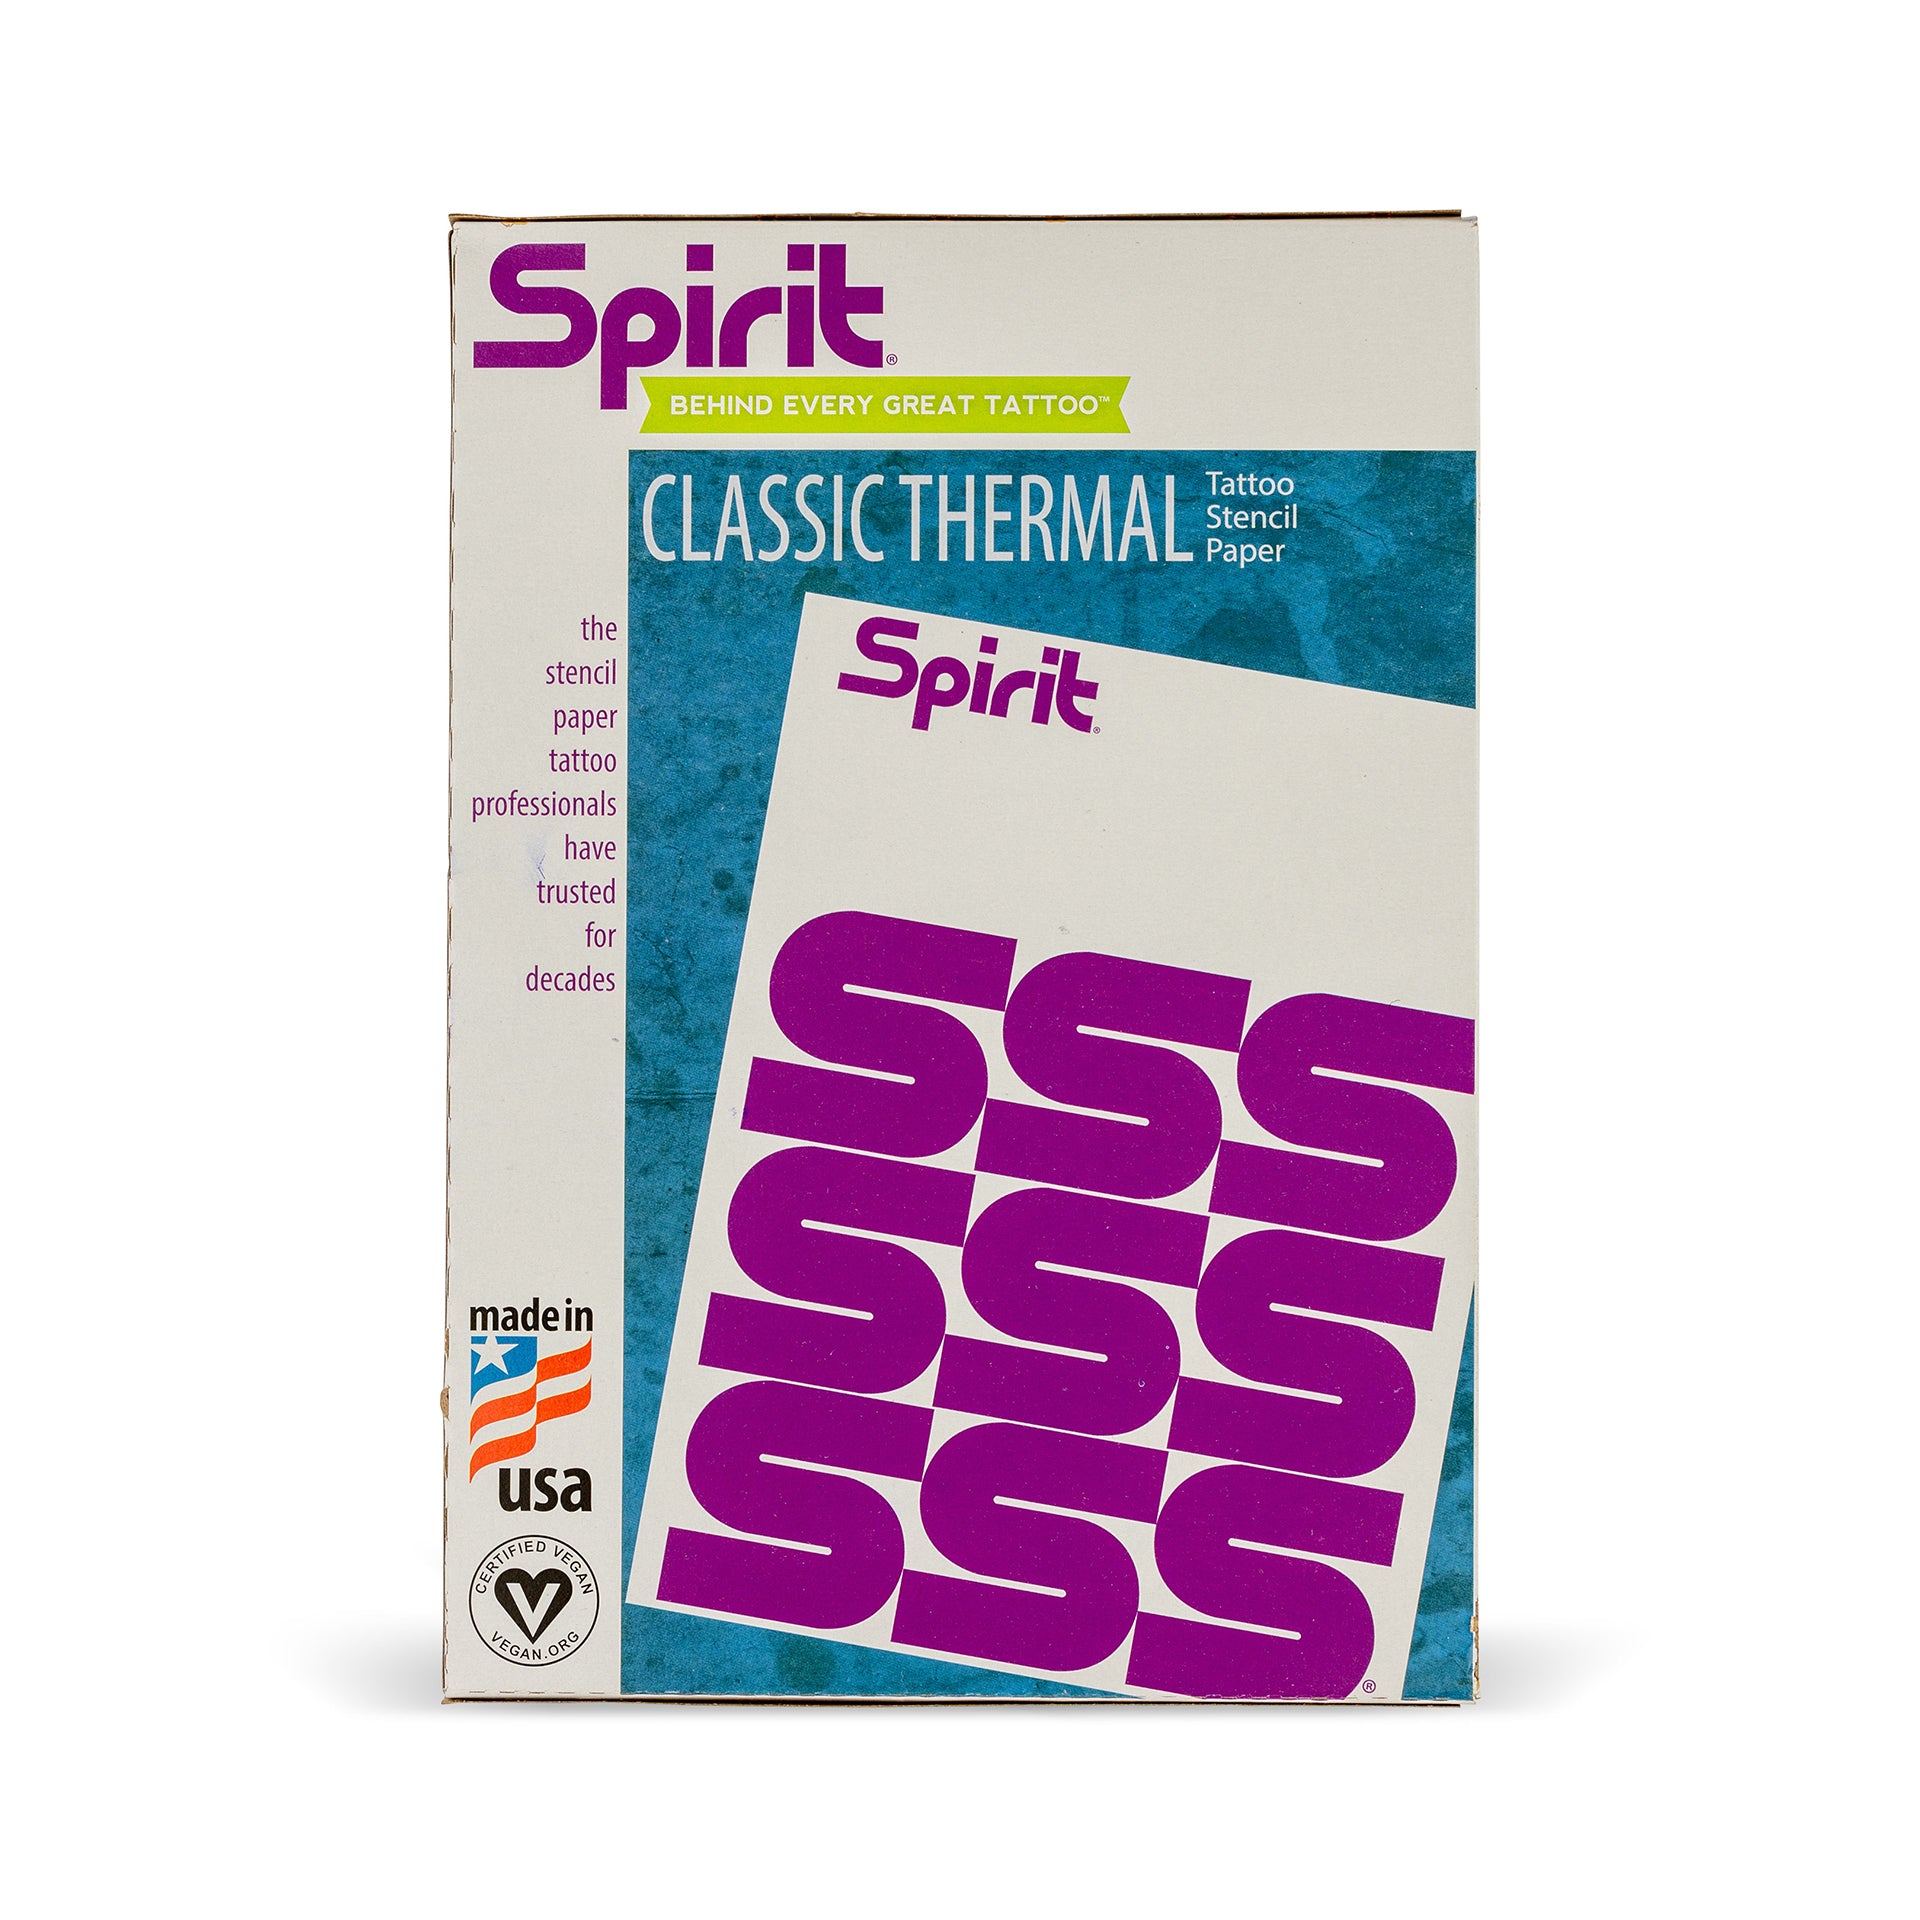 sprit-tattoo-stencil-paper-classic-thermal